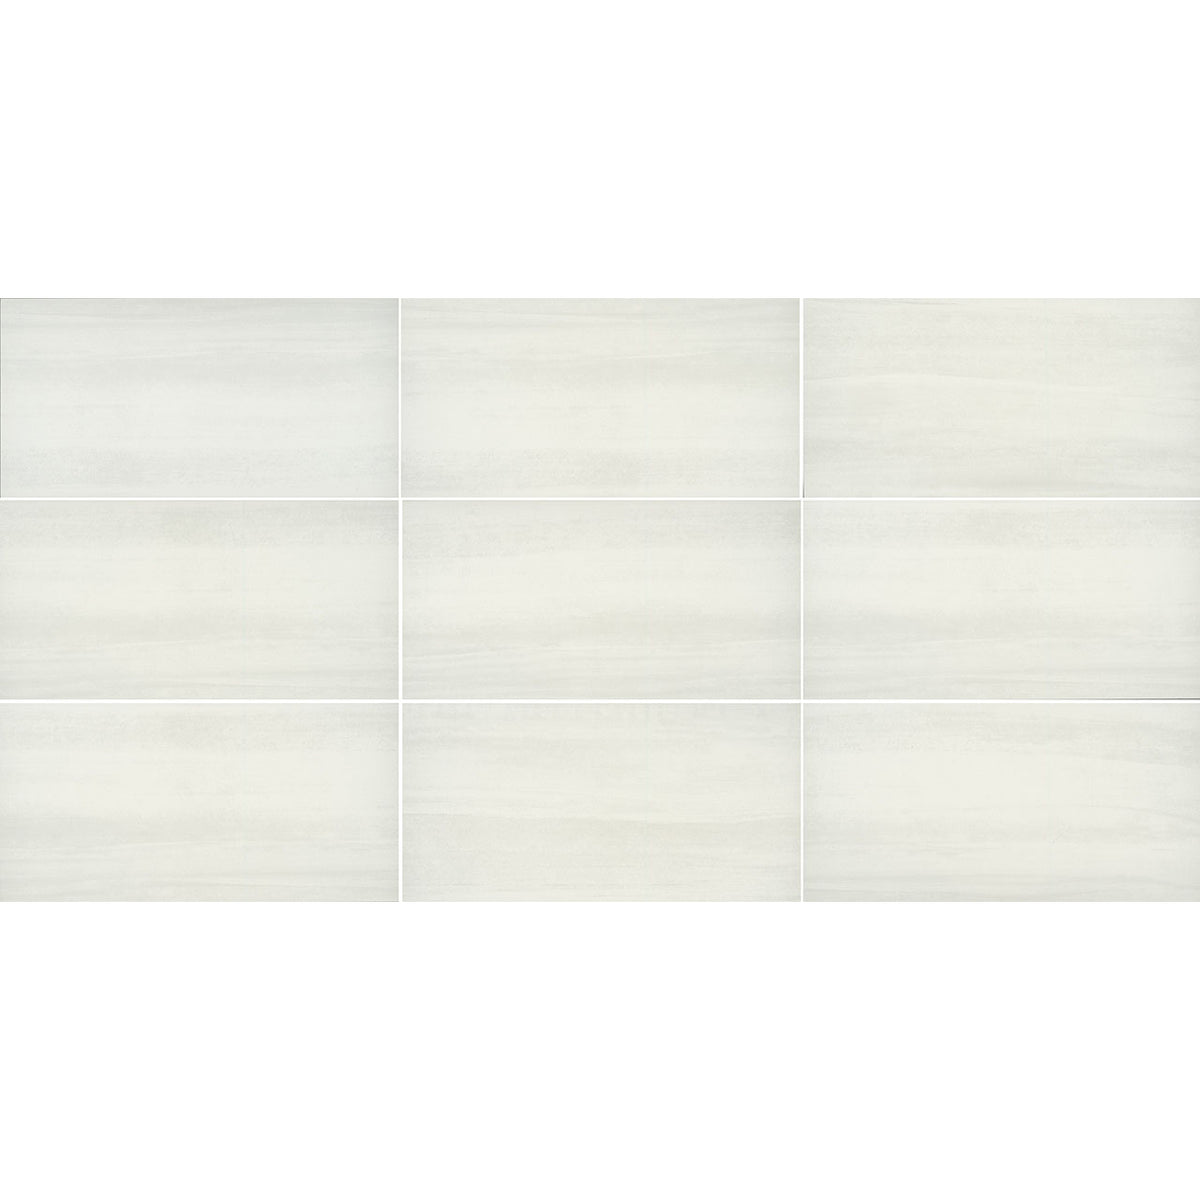 Floors 2000 - Alliance 12 in. x 24 in. Matte Porcelain Tile - White Sand Variation